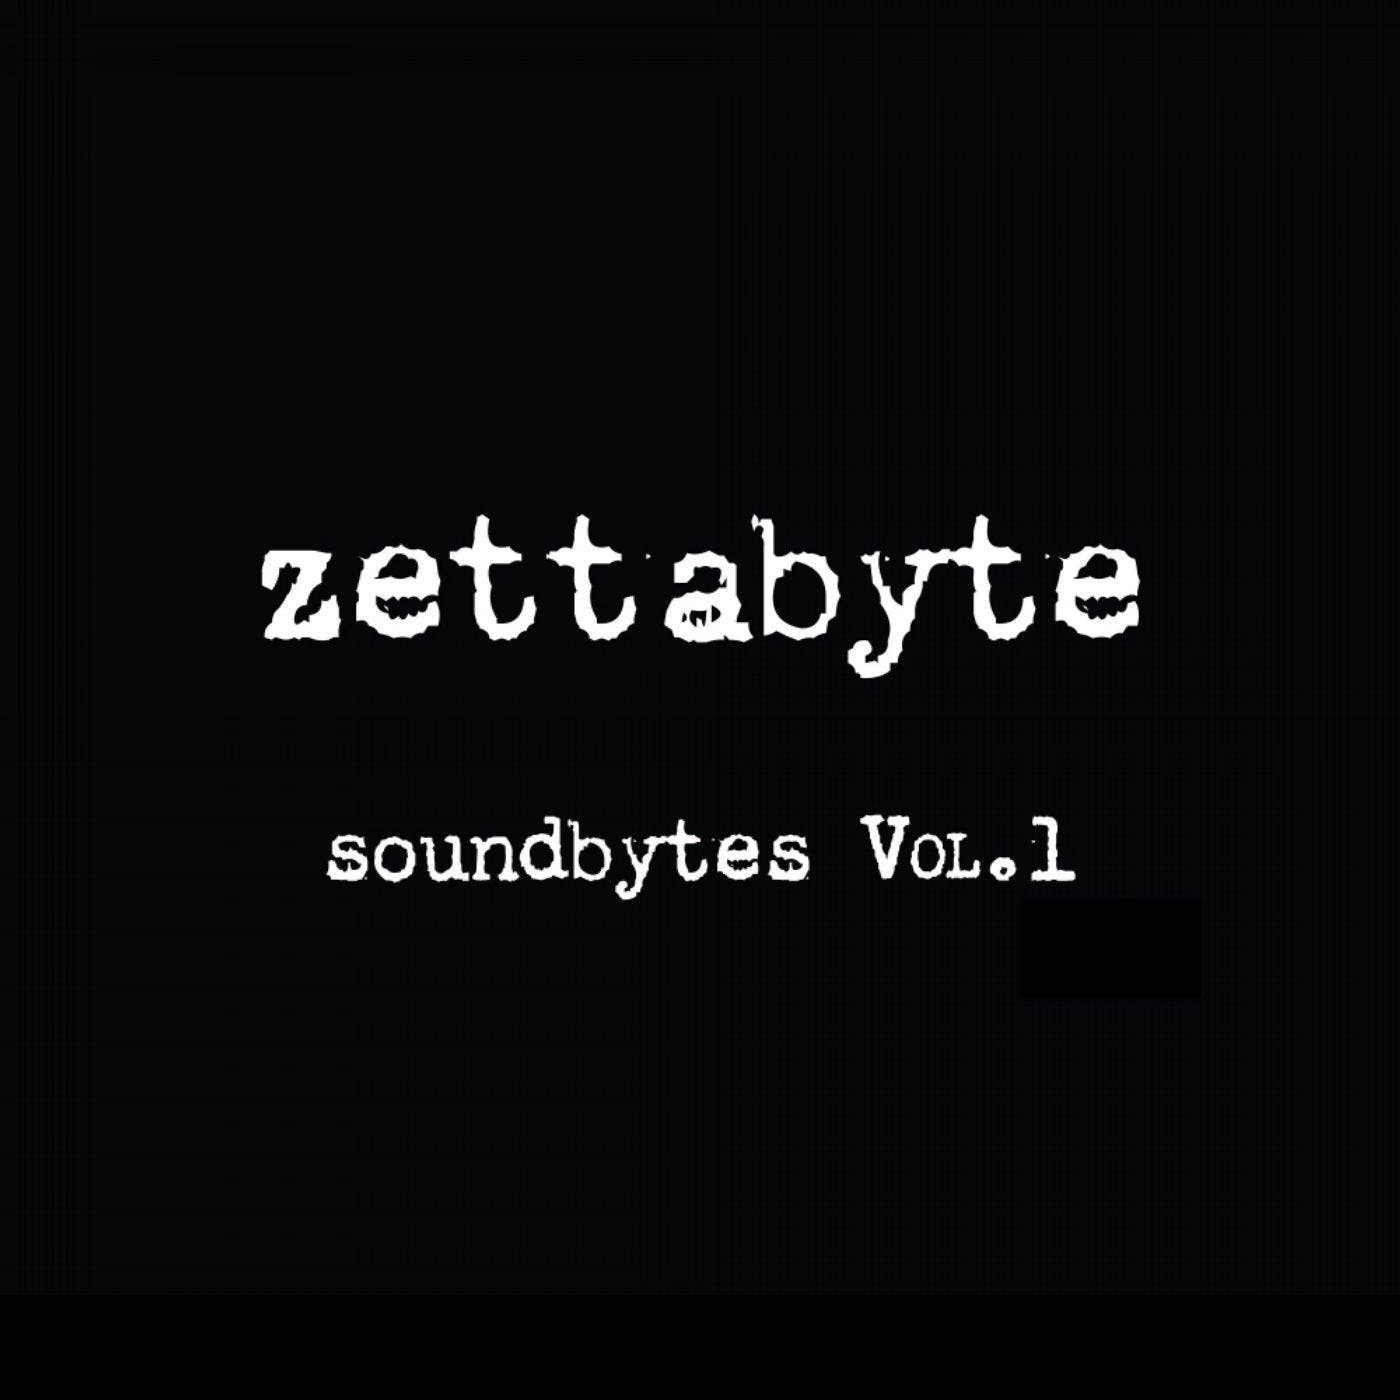 Zettabyte SoundBytes, Vol. 1